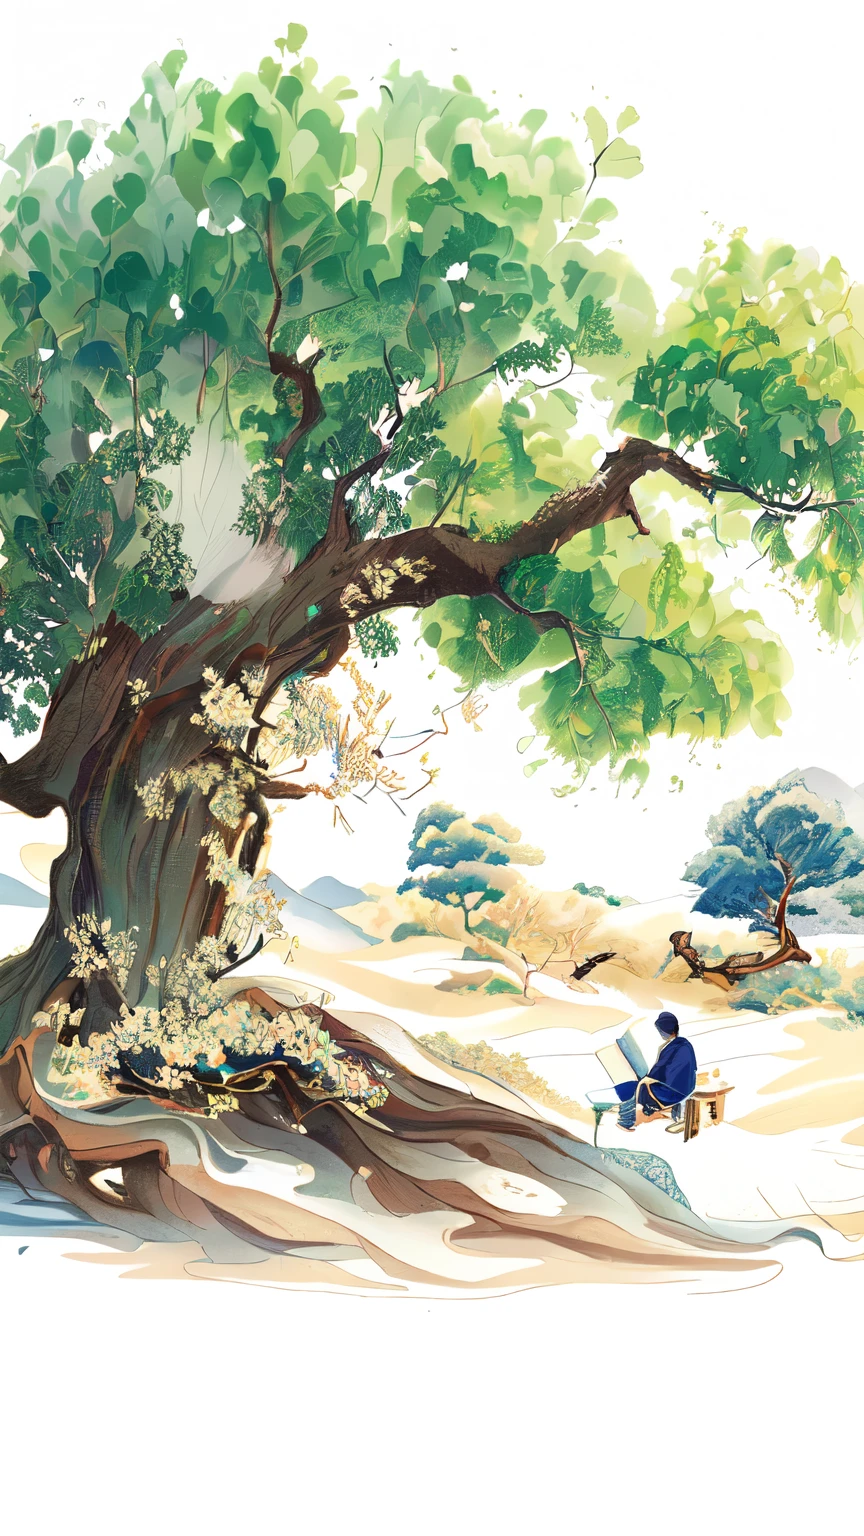 painting of a man يجلس تحت شجرة with a book, الفنان الكوري, القراءة تحت الشجرة,بواسطة بو هوا, التوضيح الفني الجميل,  الفنانين الصينيين, الأشجار القديمة, يجلس تحت شجرة, أسلوب المد الوطني الصيني